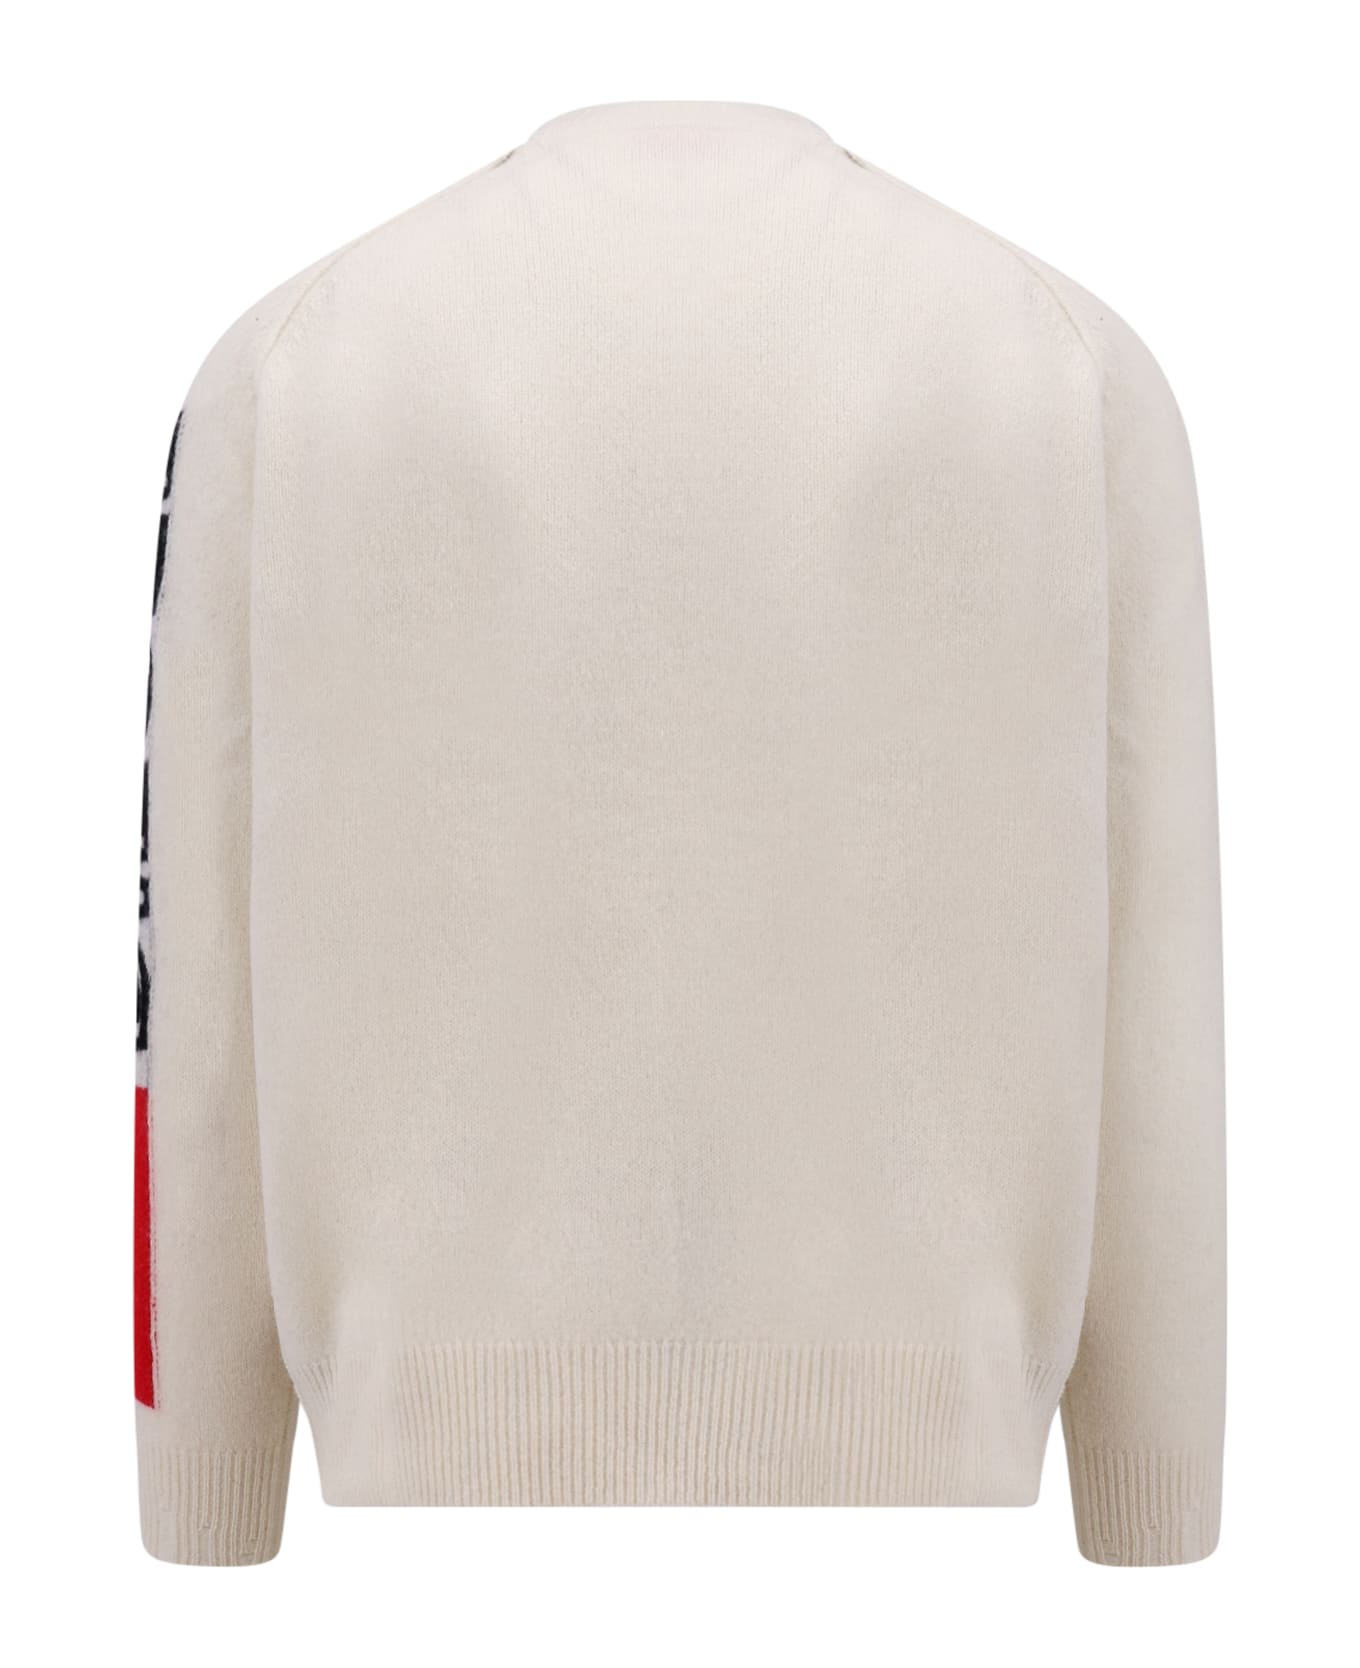 Diesel Sweater - White